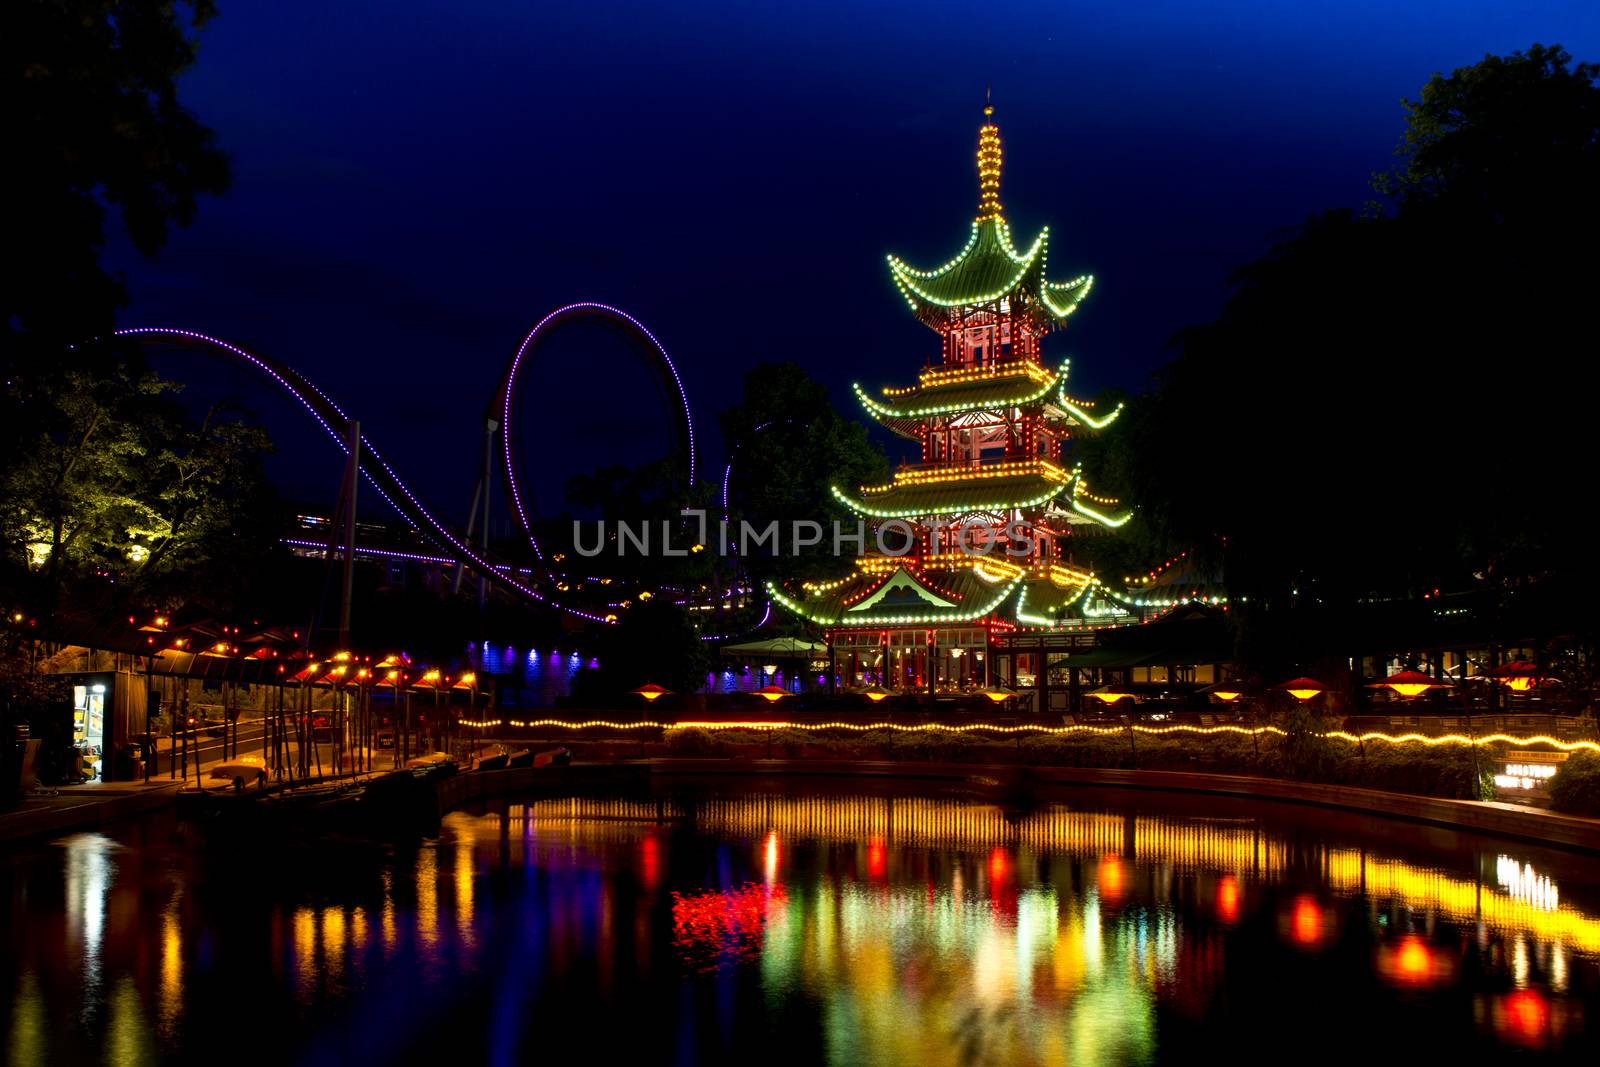 Oriental Pagoda  in Tivoli, Copenhagen, illuminated and reflecting in a pond